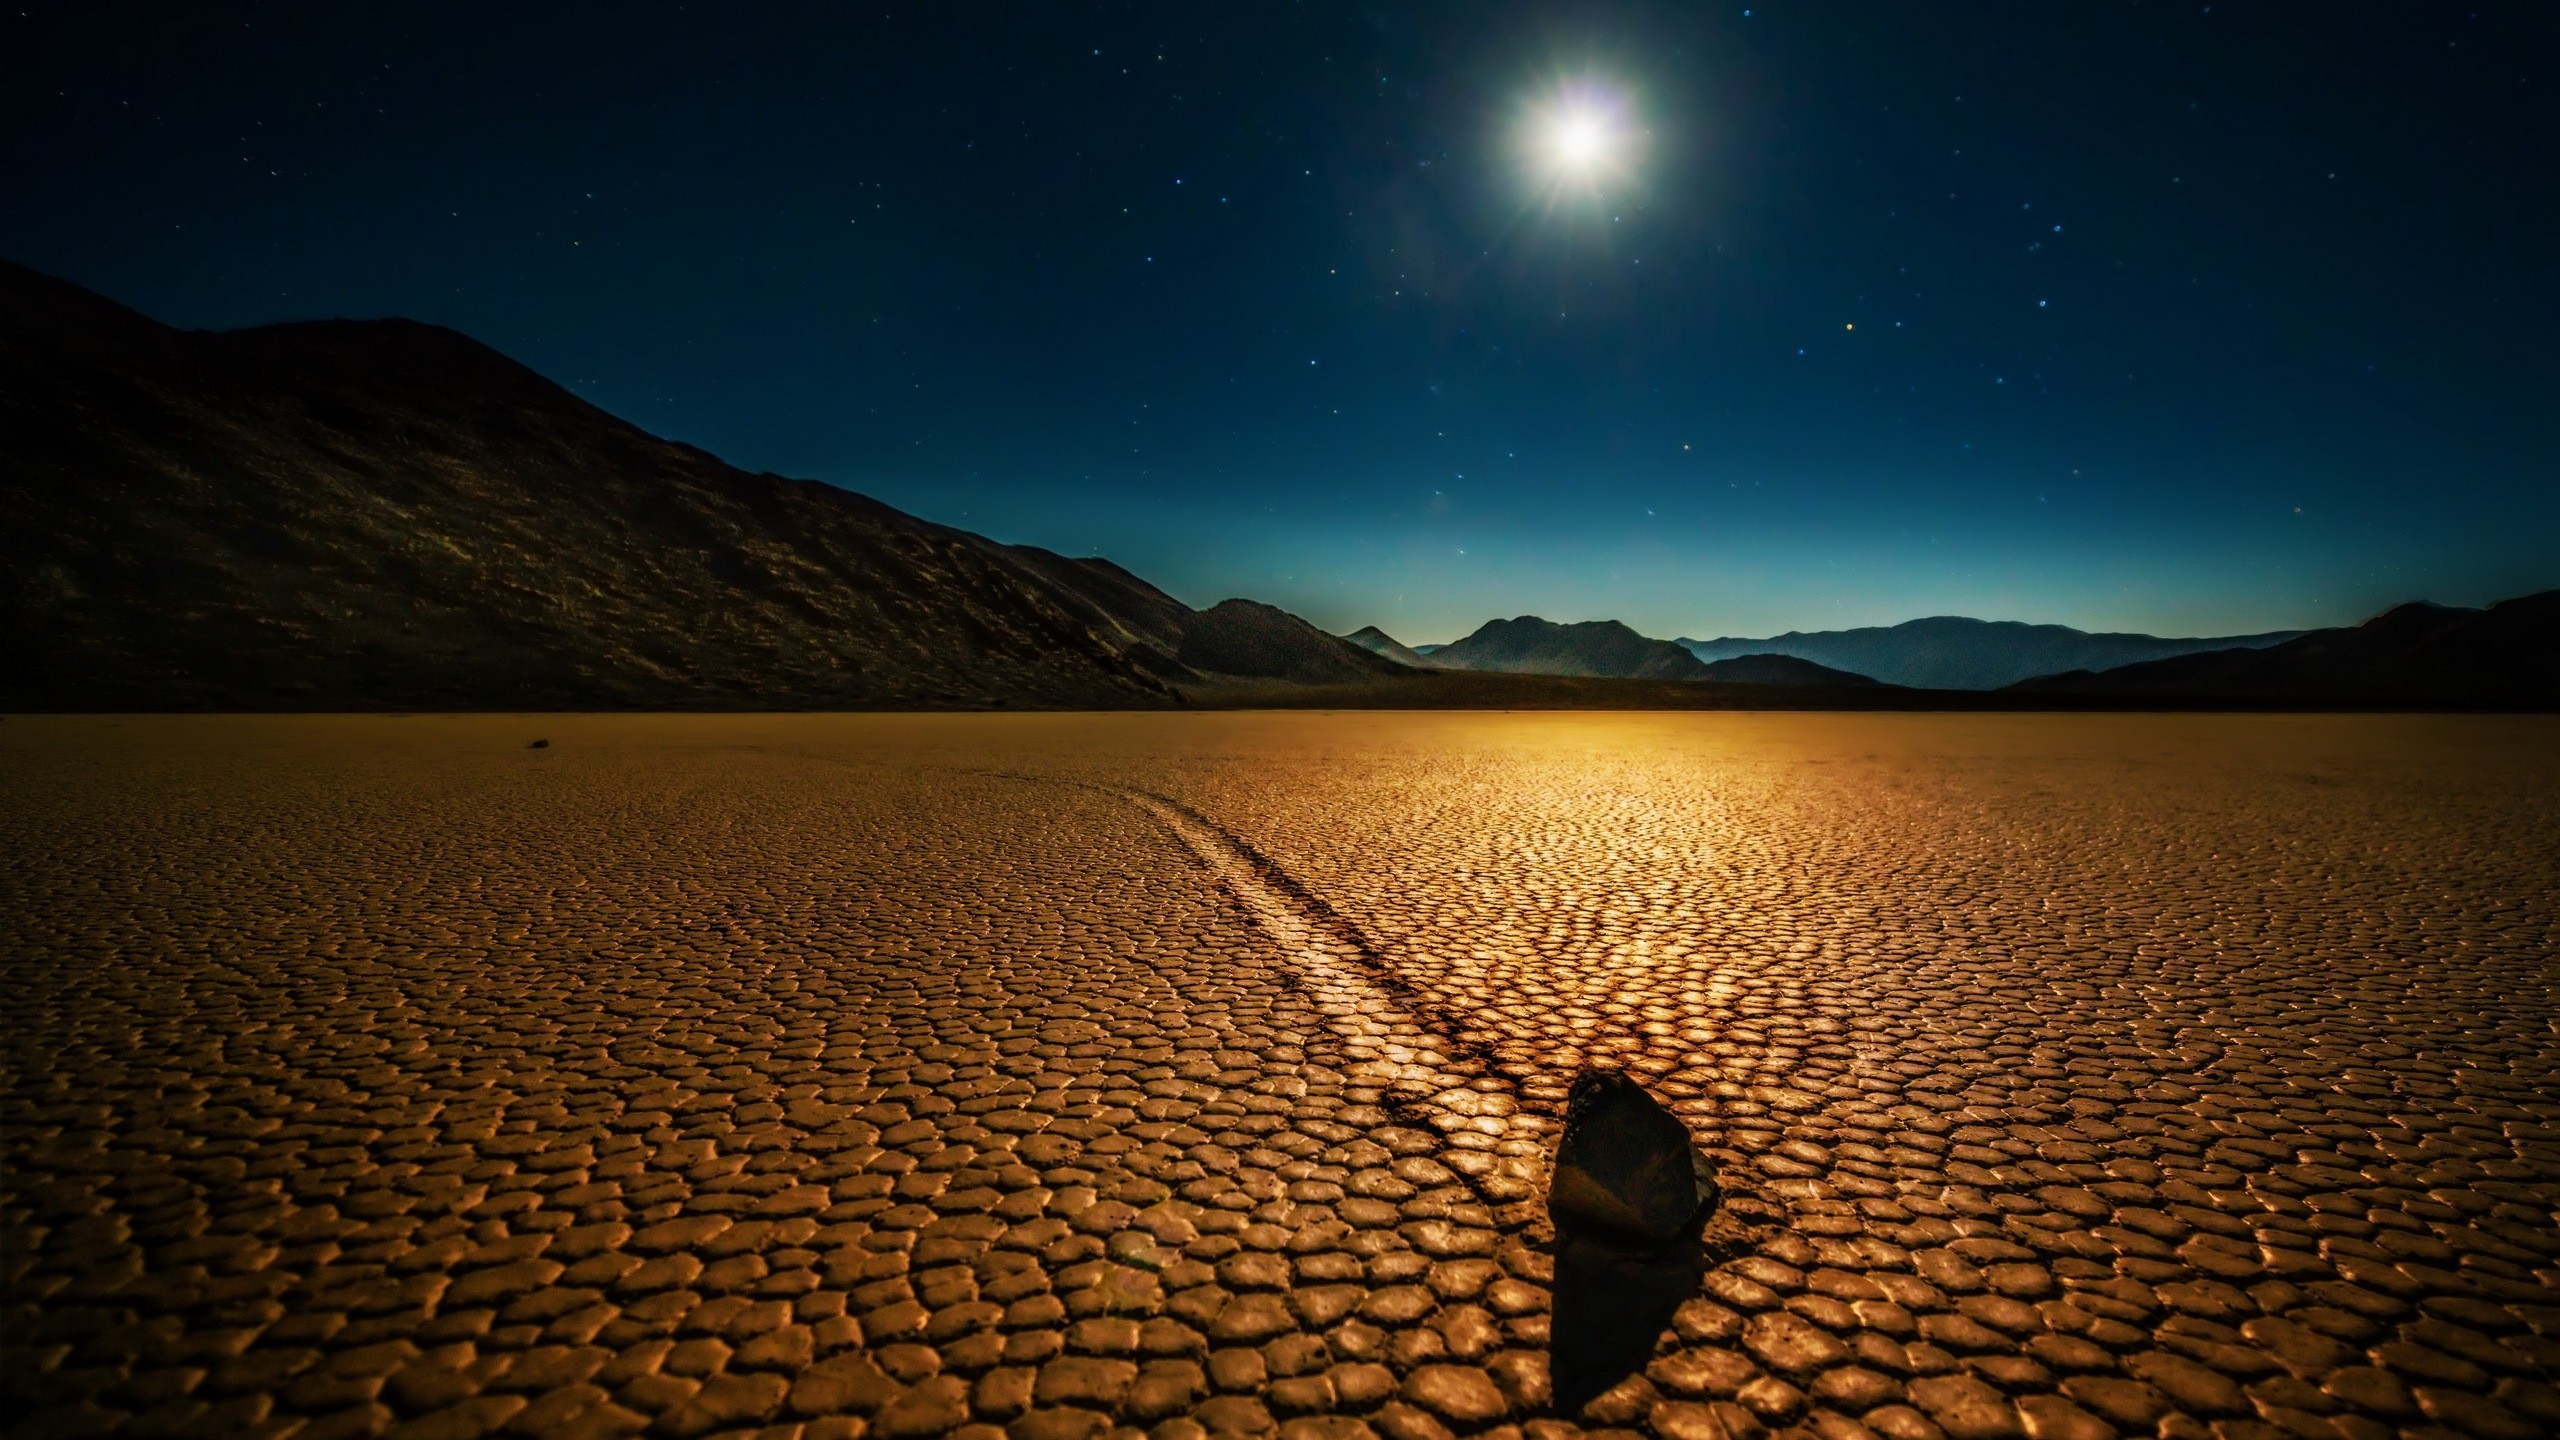 Desert Night Landscape for 2560x1440 HDTV resolution